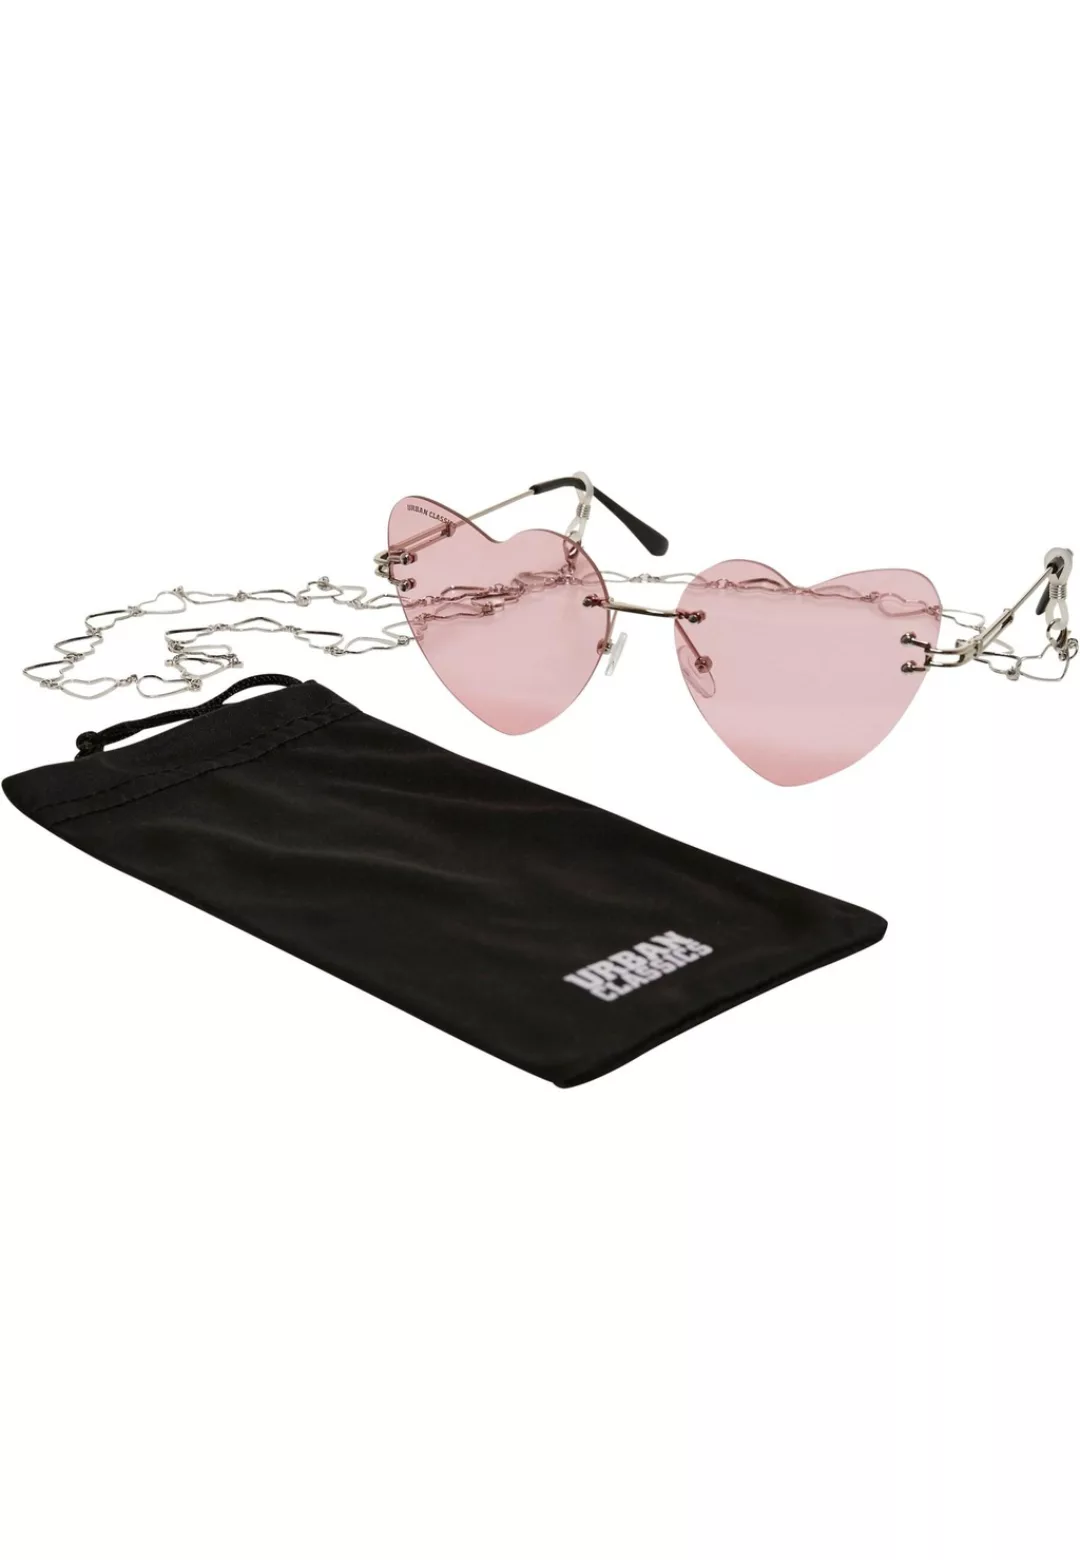 URBAN CLASSICS Sonnenbrille "Unisex Sunglasses Heart With Chain" günstig online kaufen